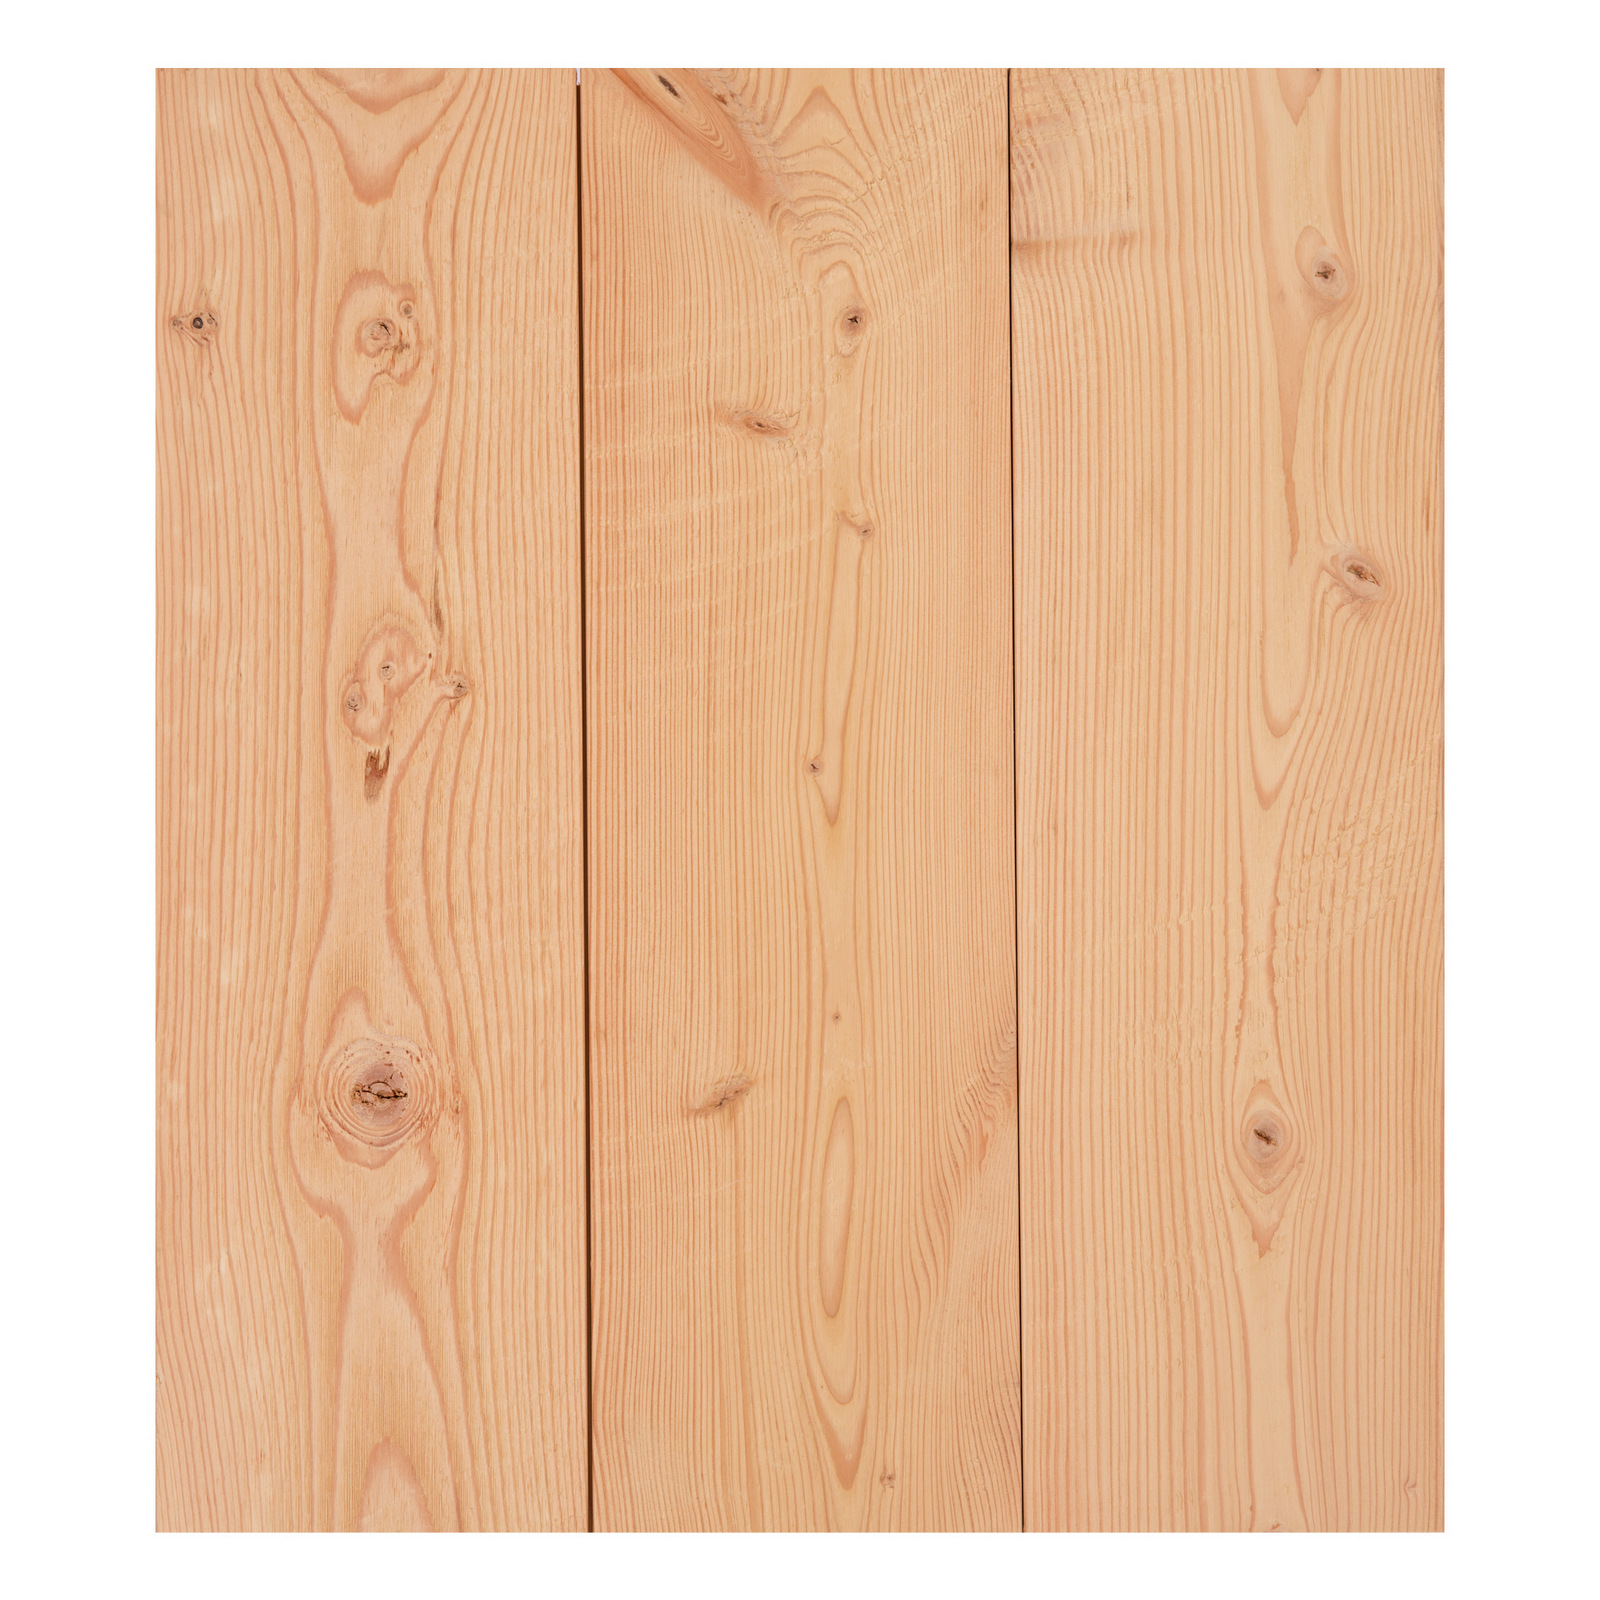 circular sawn doug fir flooring